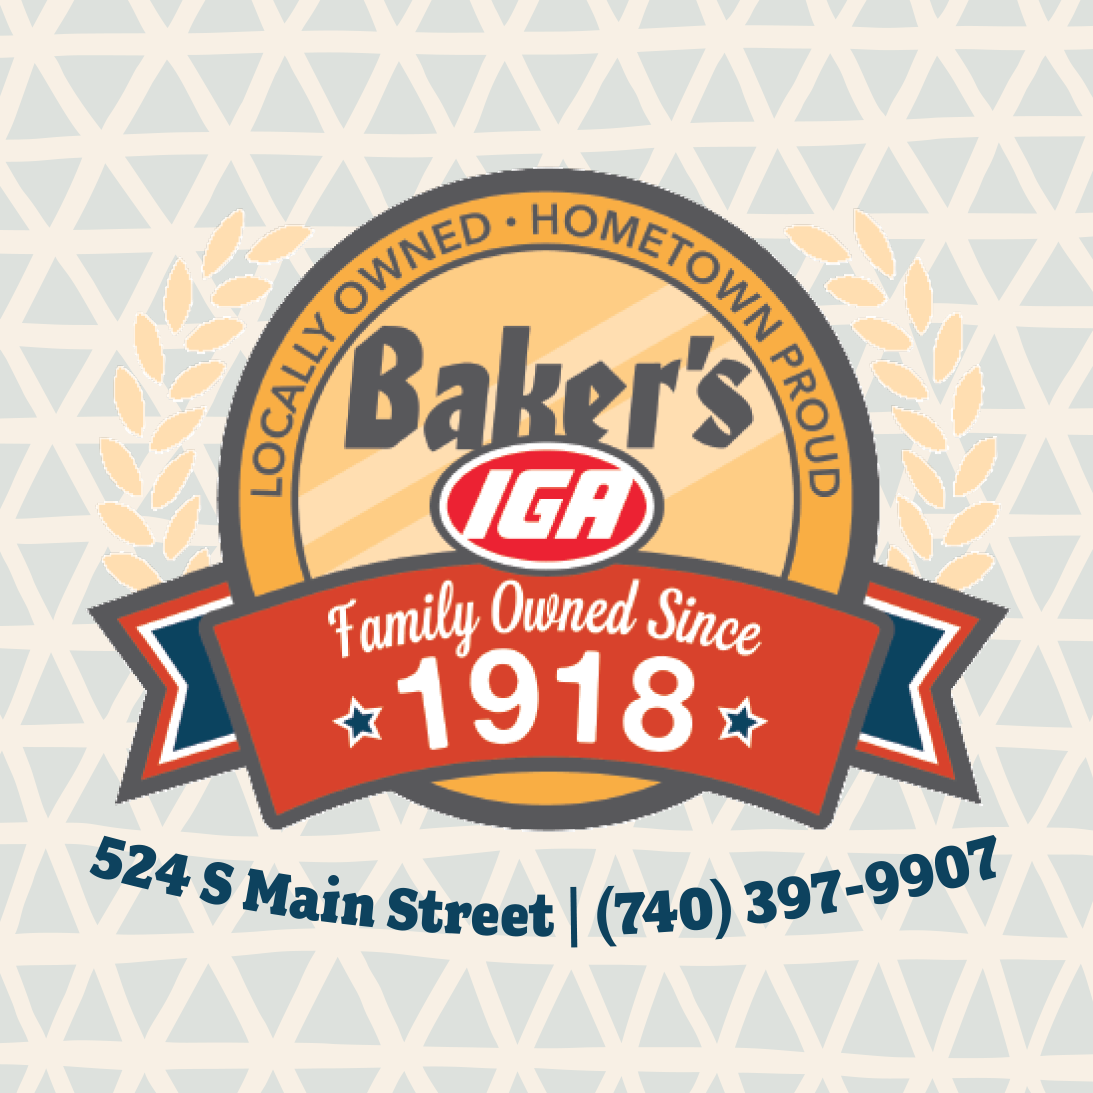 Baker's IGA